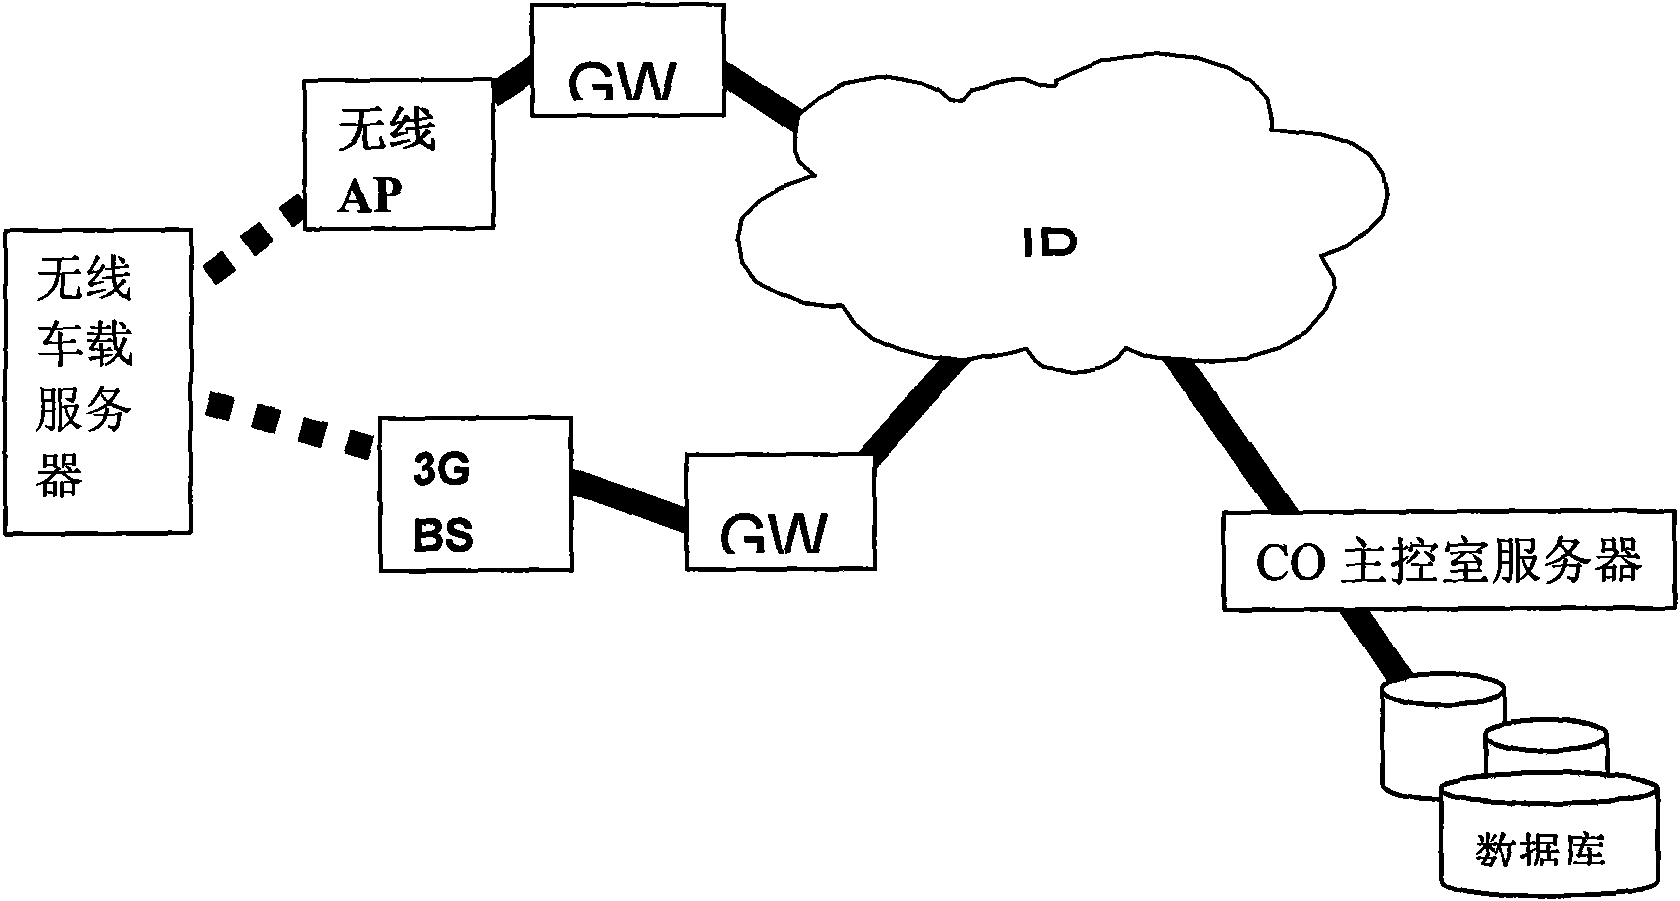 Vehicle multi-mode wireless network communication system